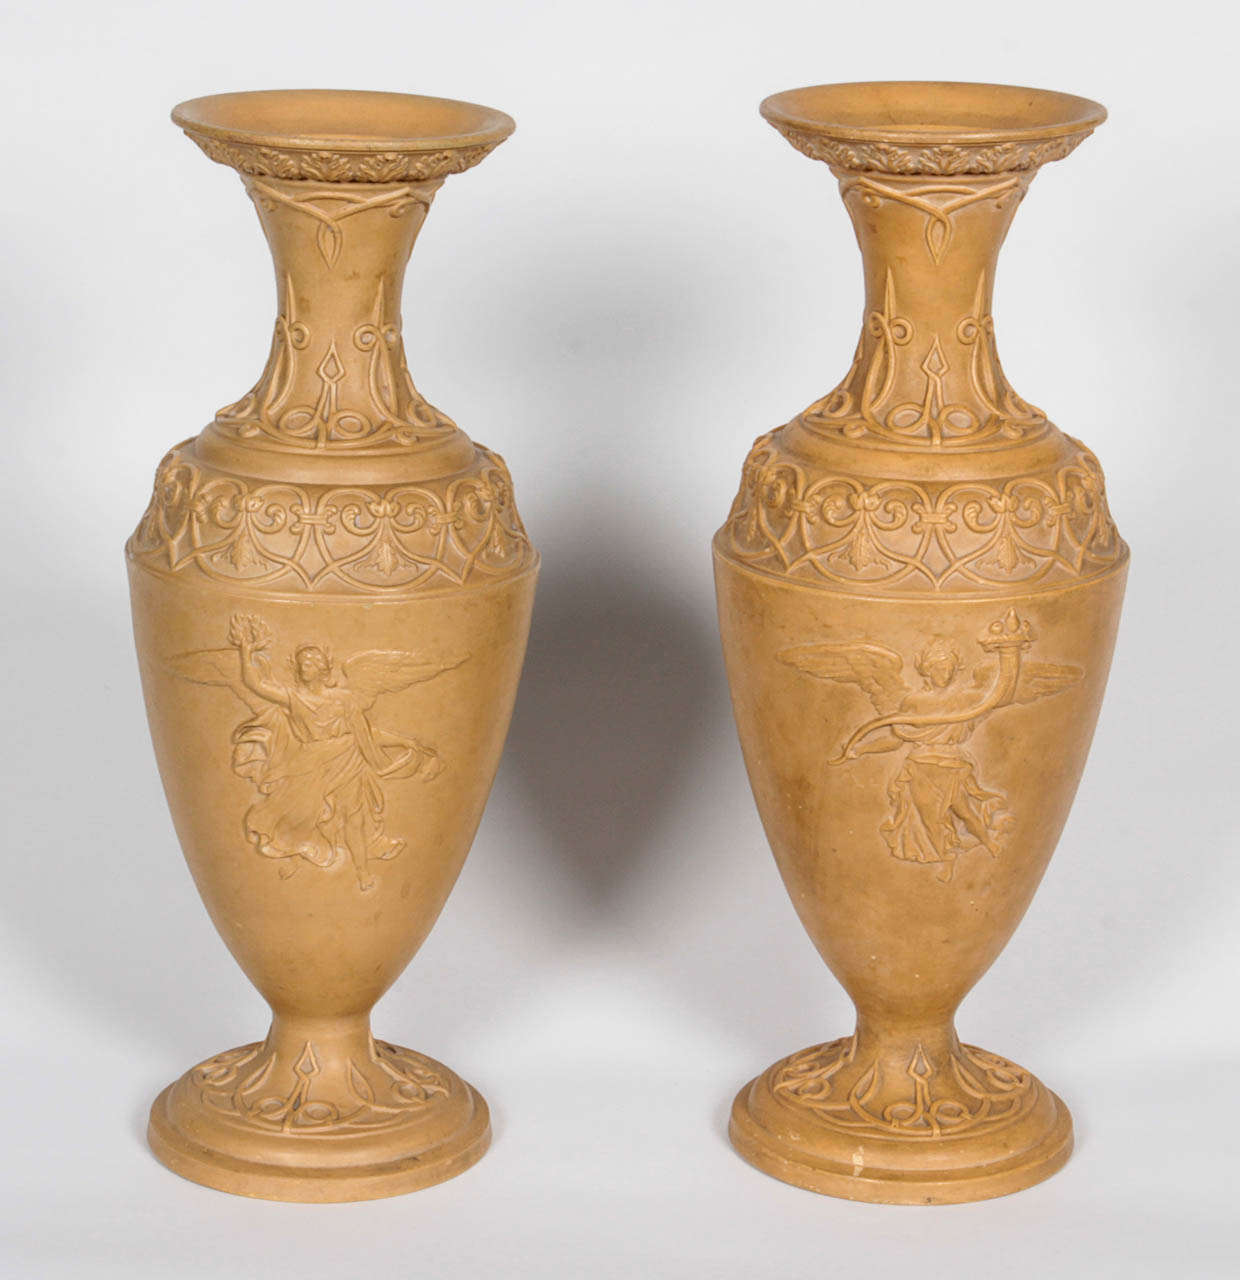 Ein Paar bemalte Terrakotta-Urnen mit klassischen Figuren und Verzierungen, frühes 20